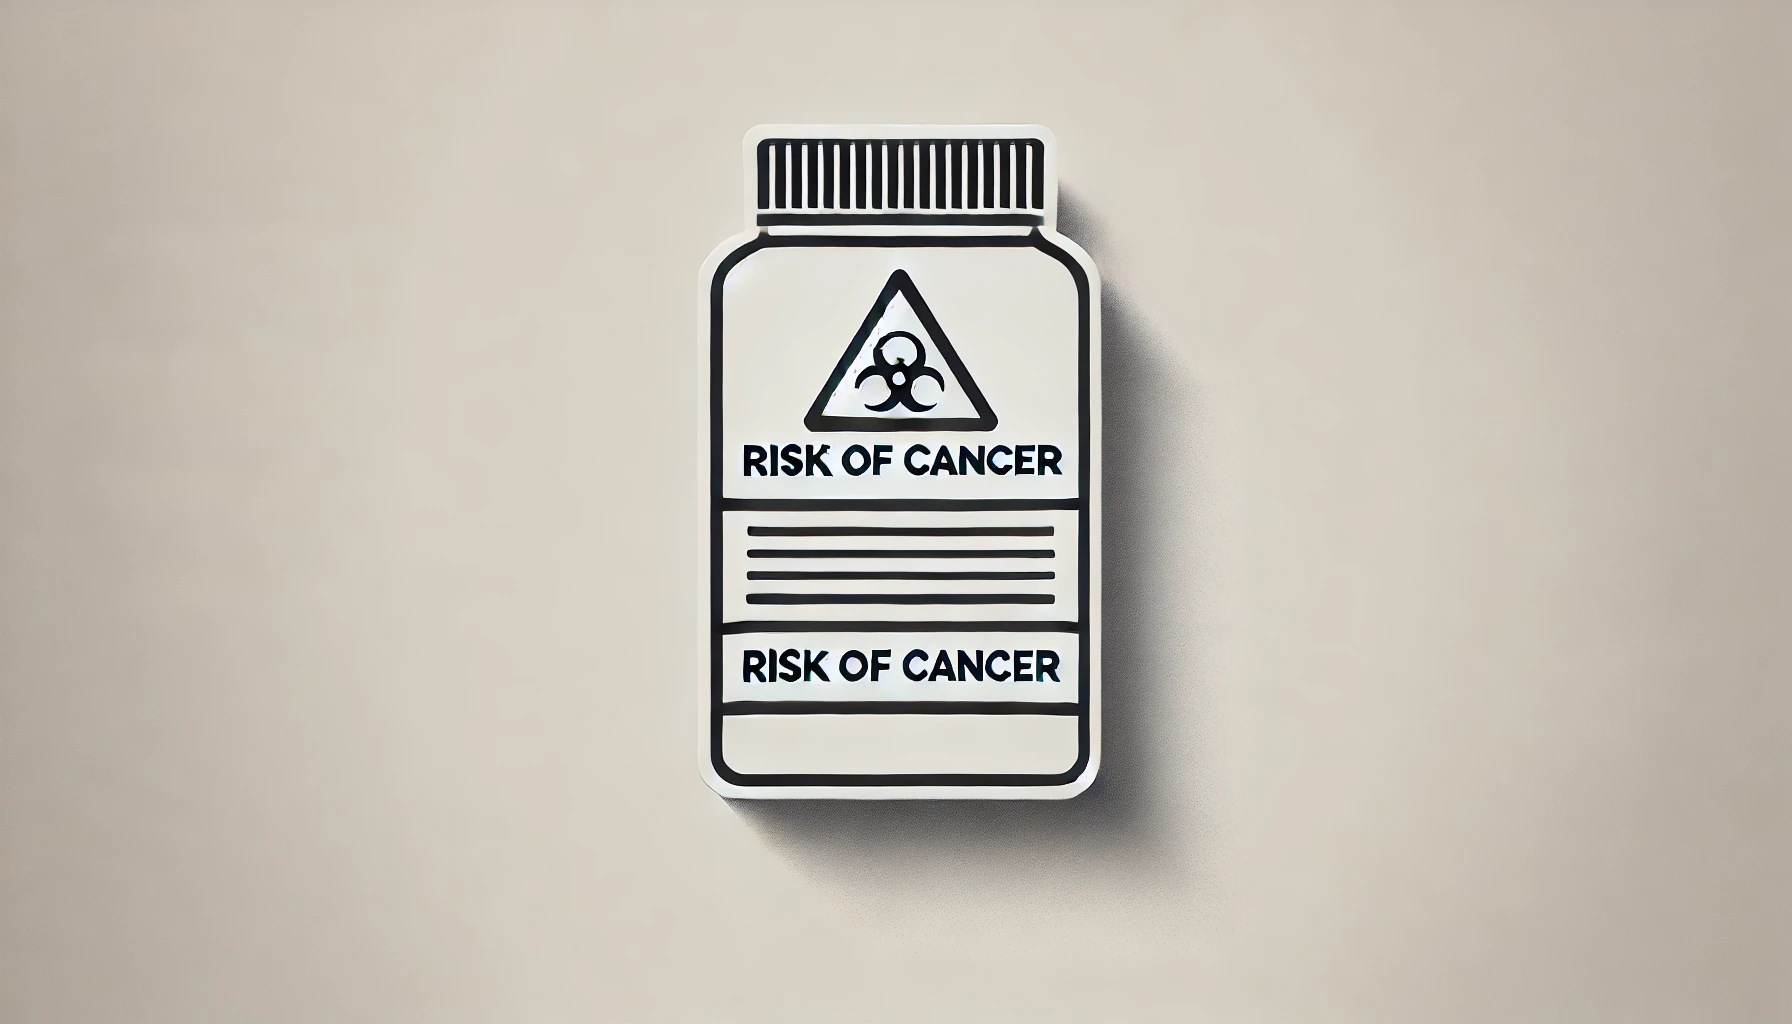 El talco y su riesgo de cáncer: ¿Qué dice la OMS?